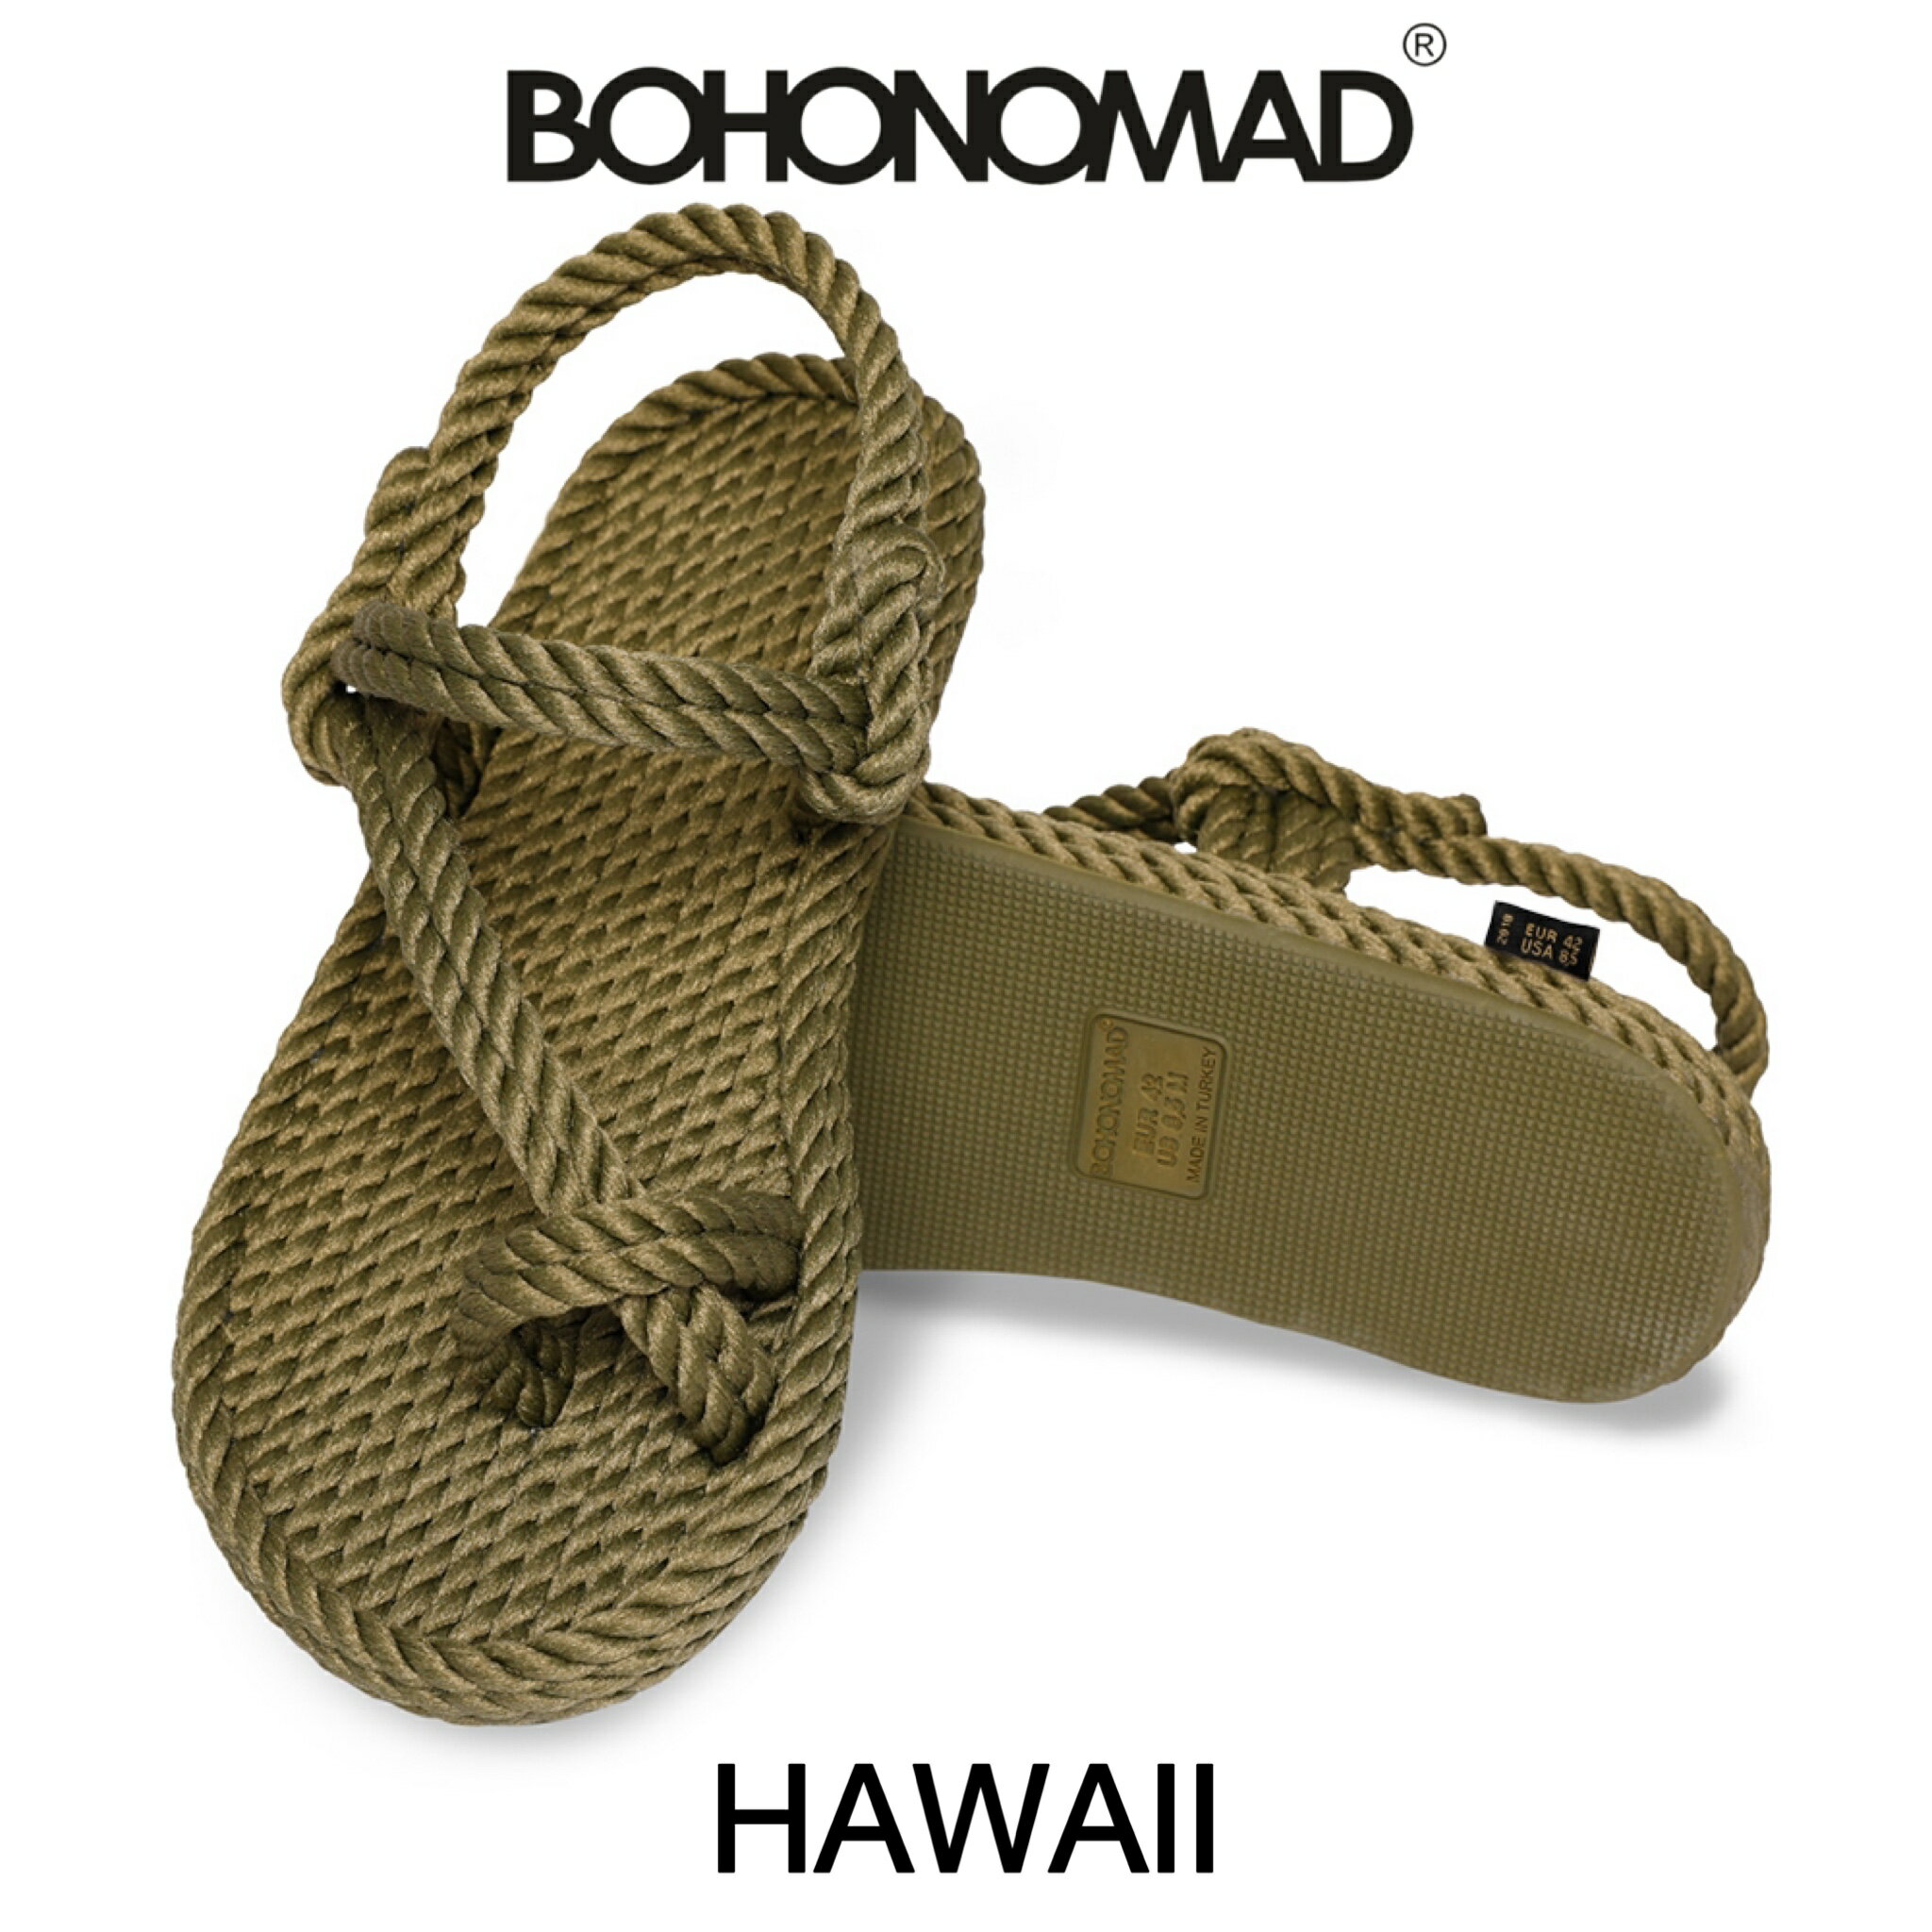 ボホノマド BOHONOMAD サンダル レディース 歩きやすい おしゃれ ブランド Hawaii KHAKI